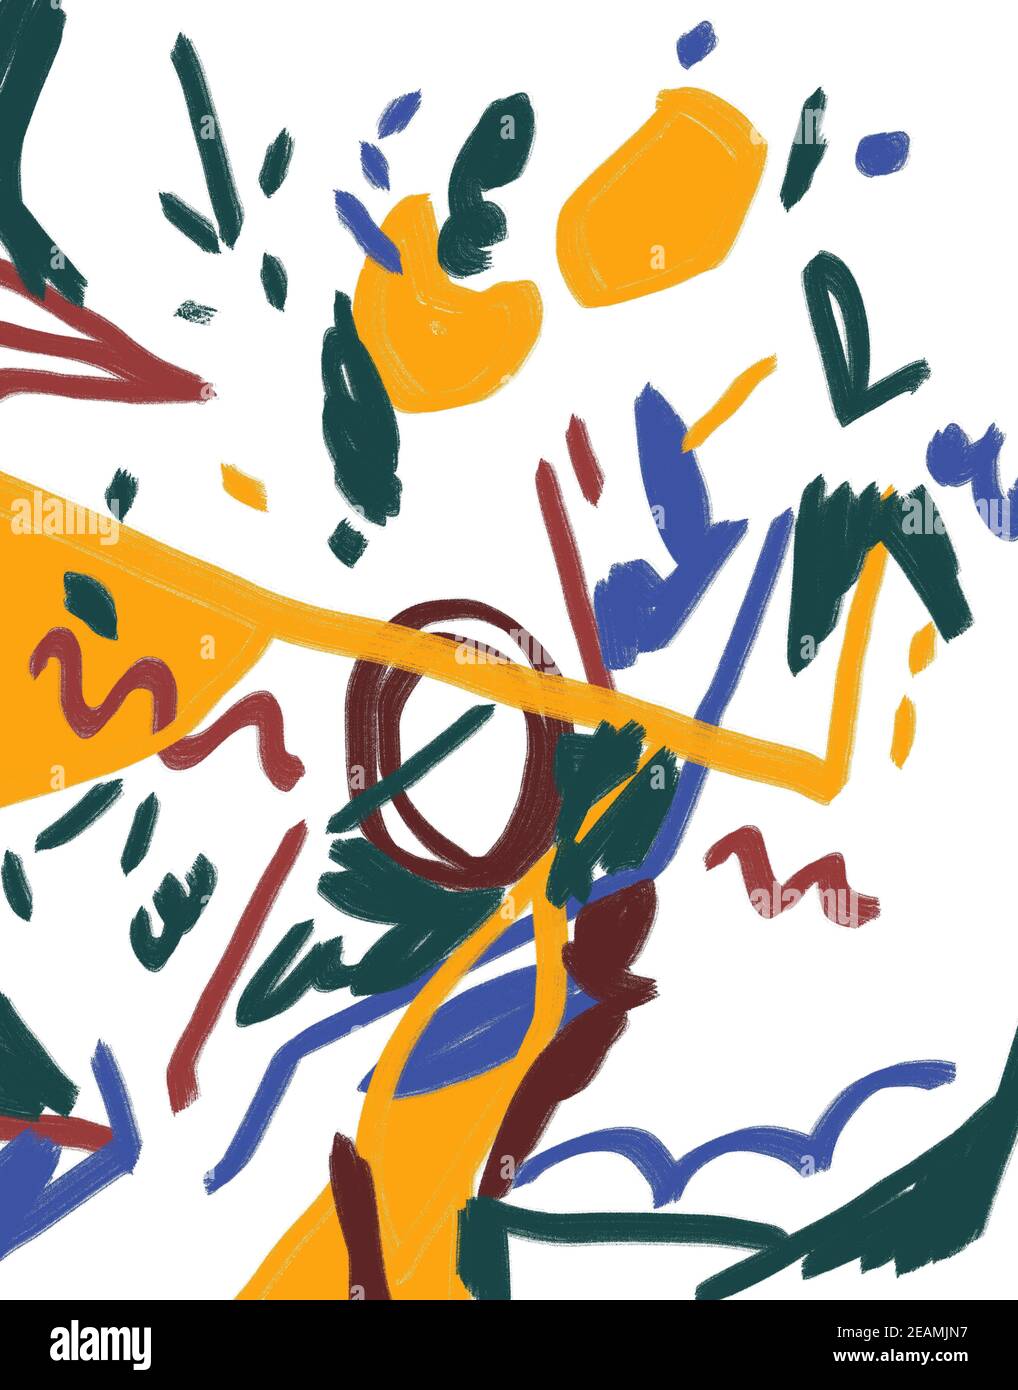 Pittura astratta con punti e linee. Illustrazione colorata con Gouache e colore pastello. Espressionismo e arte moderna per stampa, arredamento e poster Foto Stock